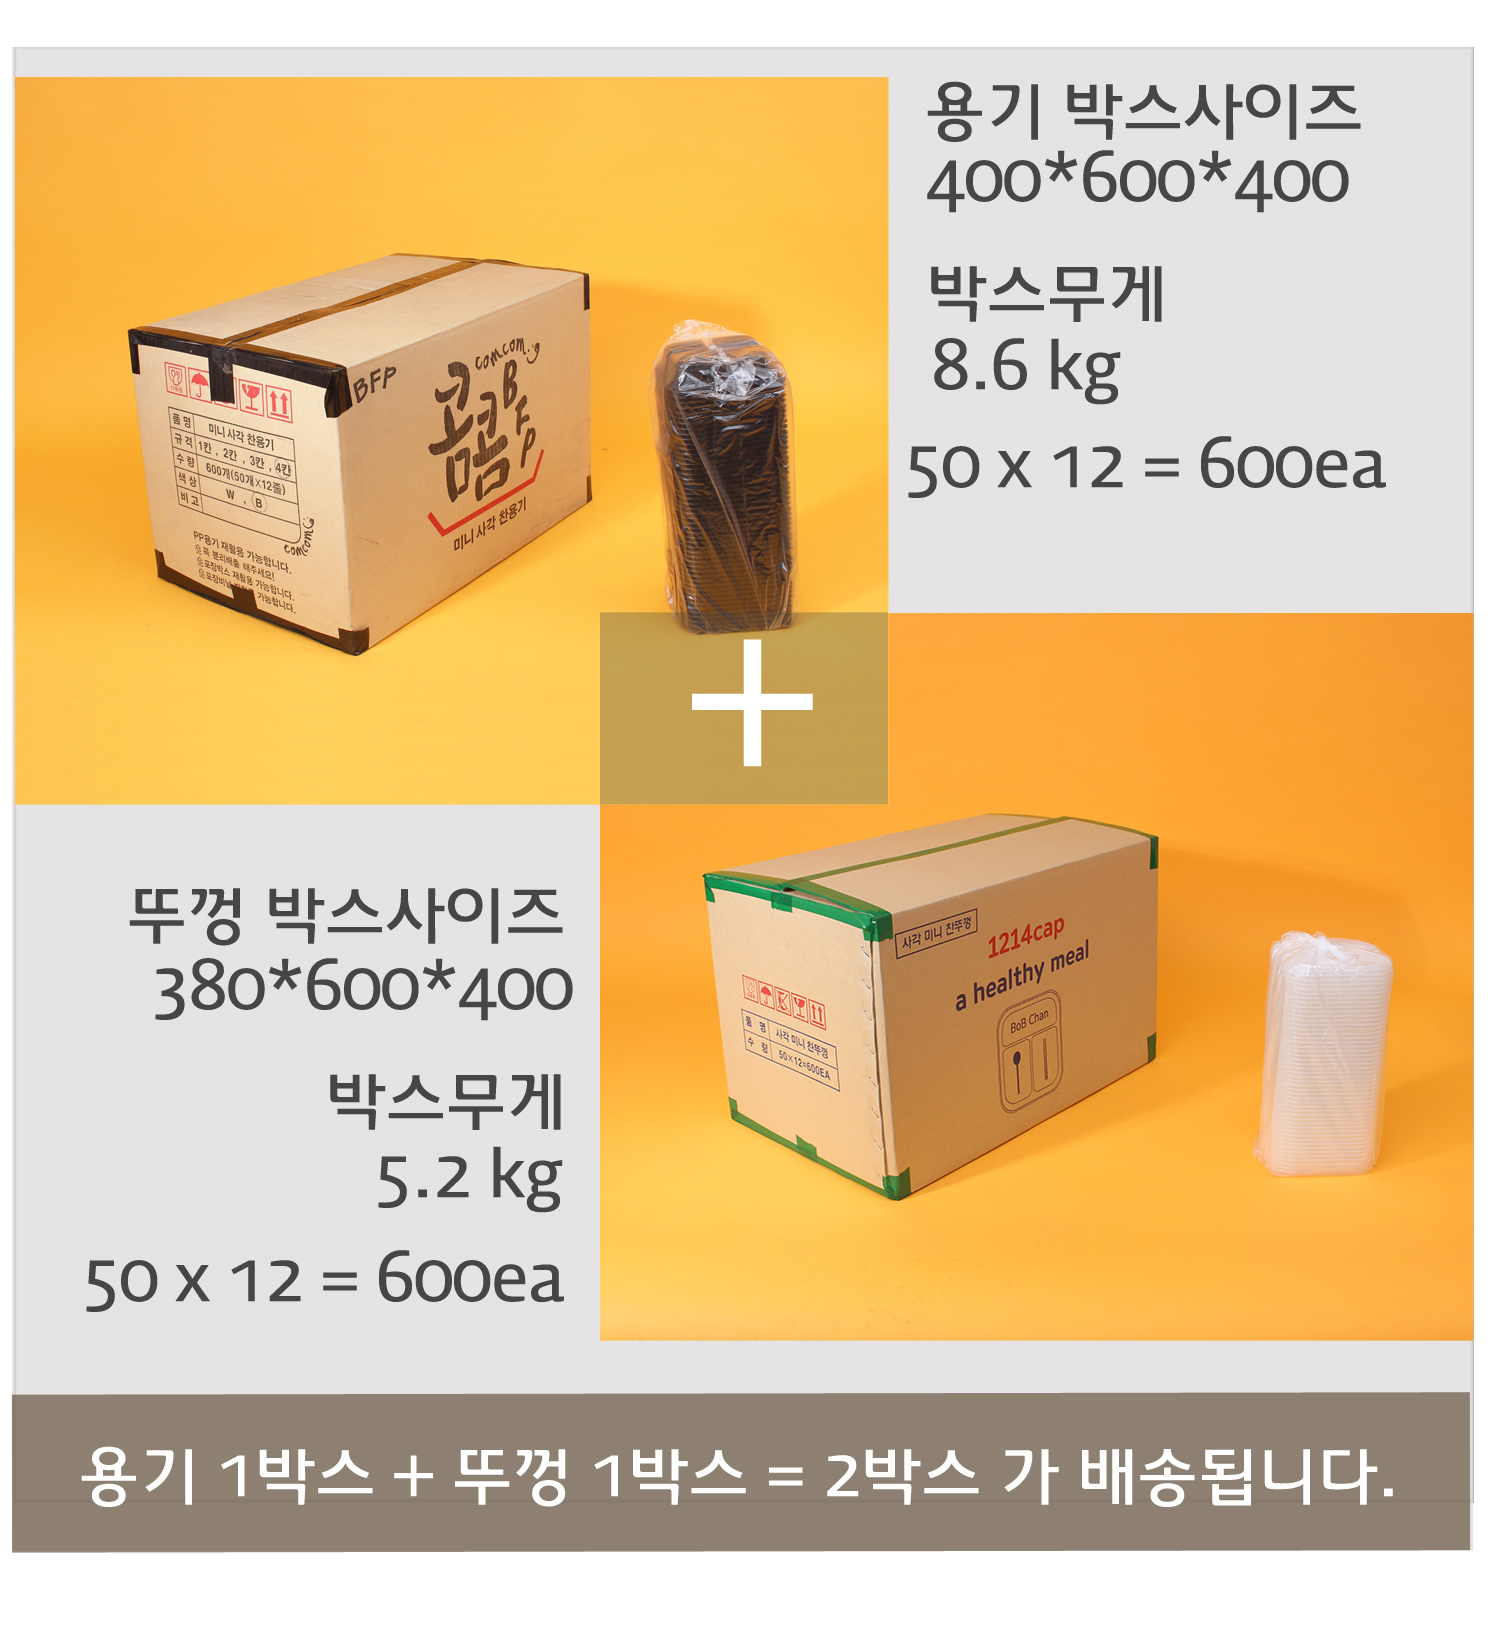 배송되는 박스의 사이즈와 무게가 표기된 이미지가 있고 배송기간 및 방법에 대한 안내 이미지가 보인다.